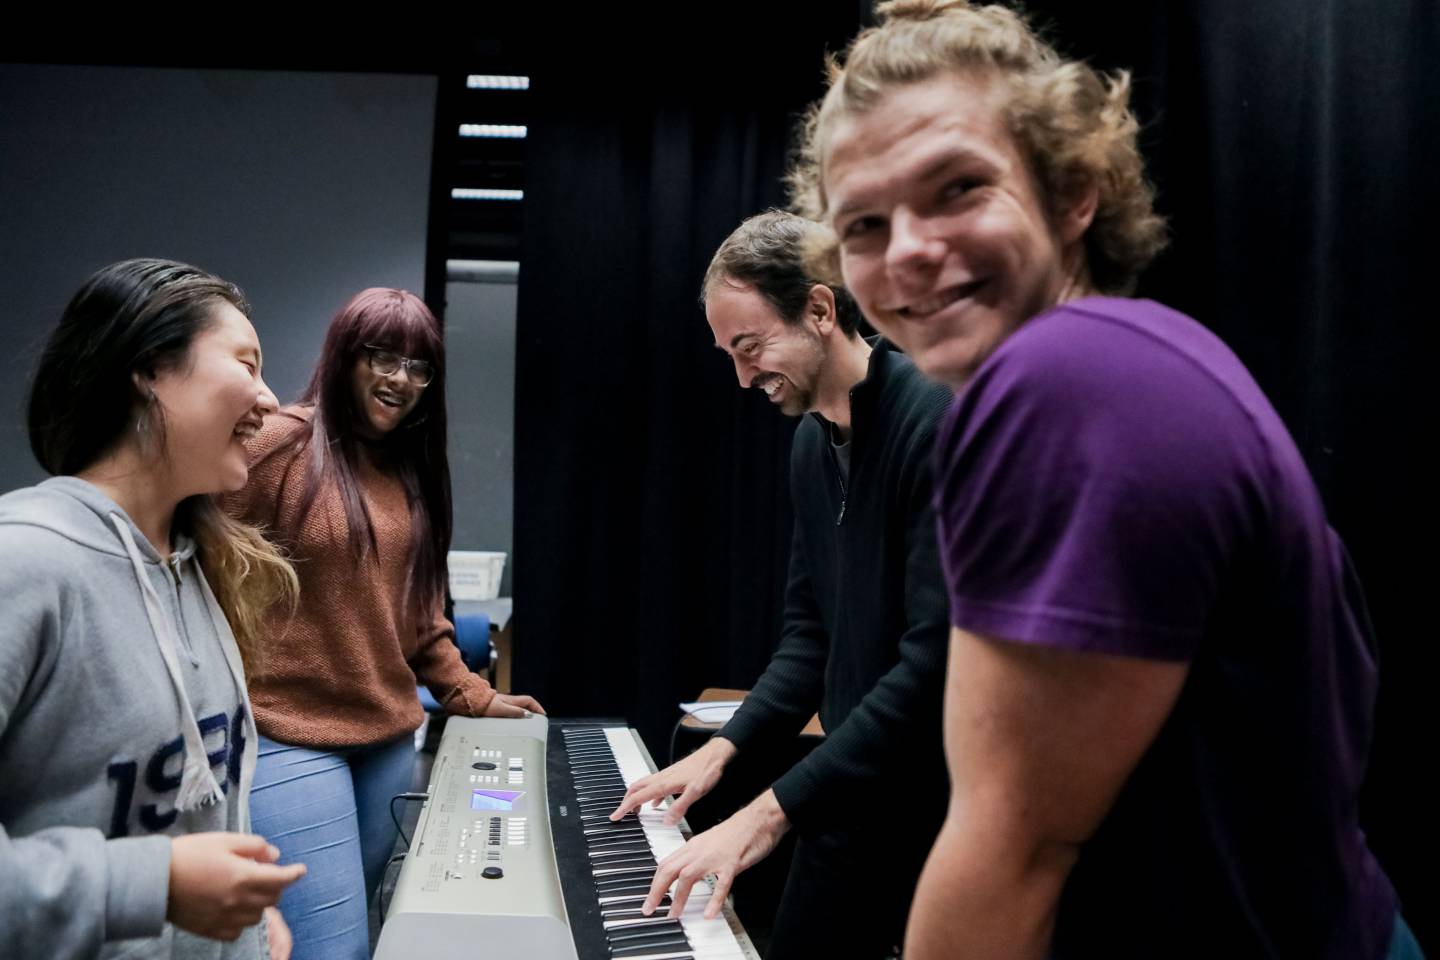 Students rehearsing at keyboard 